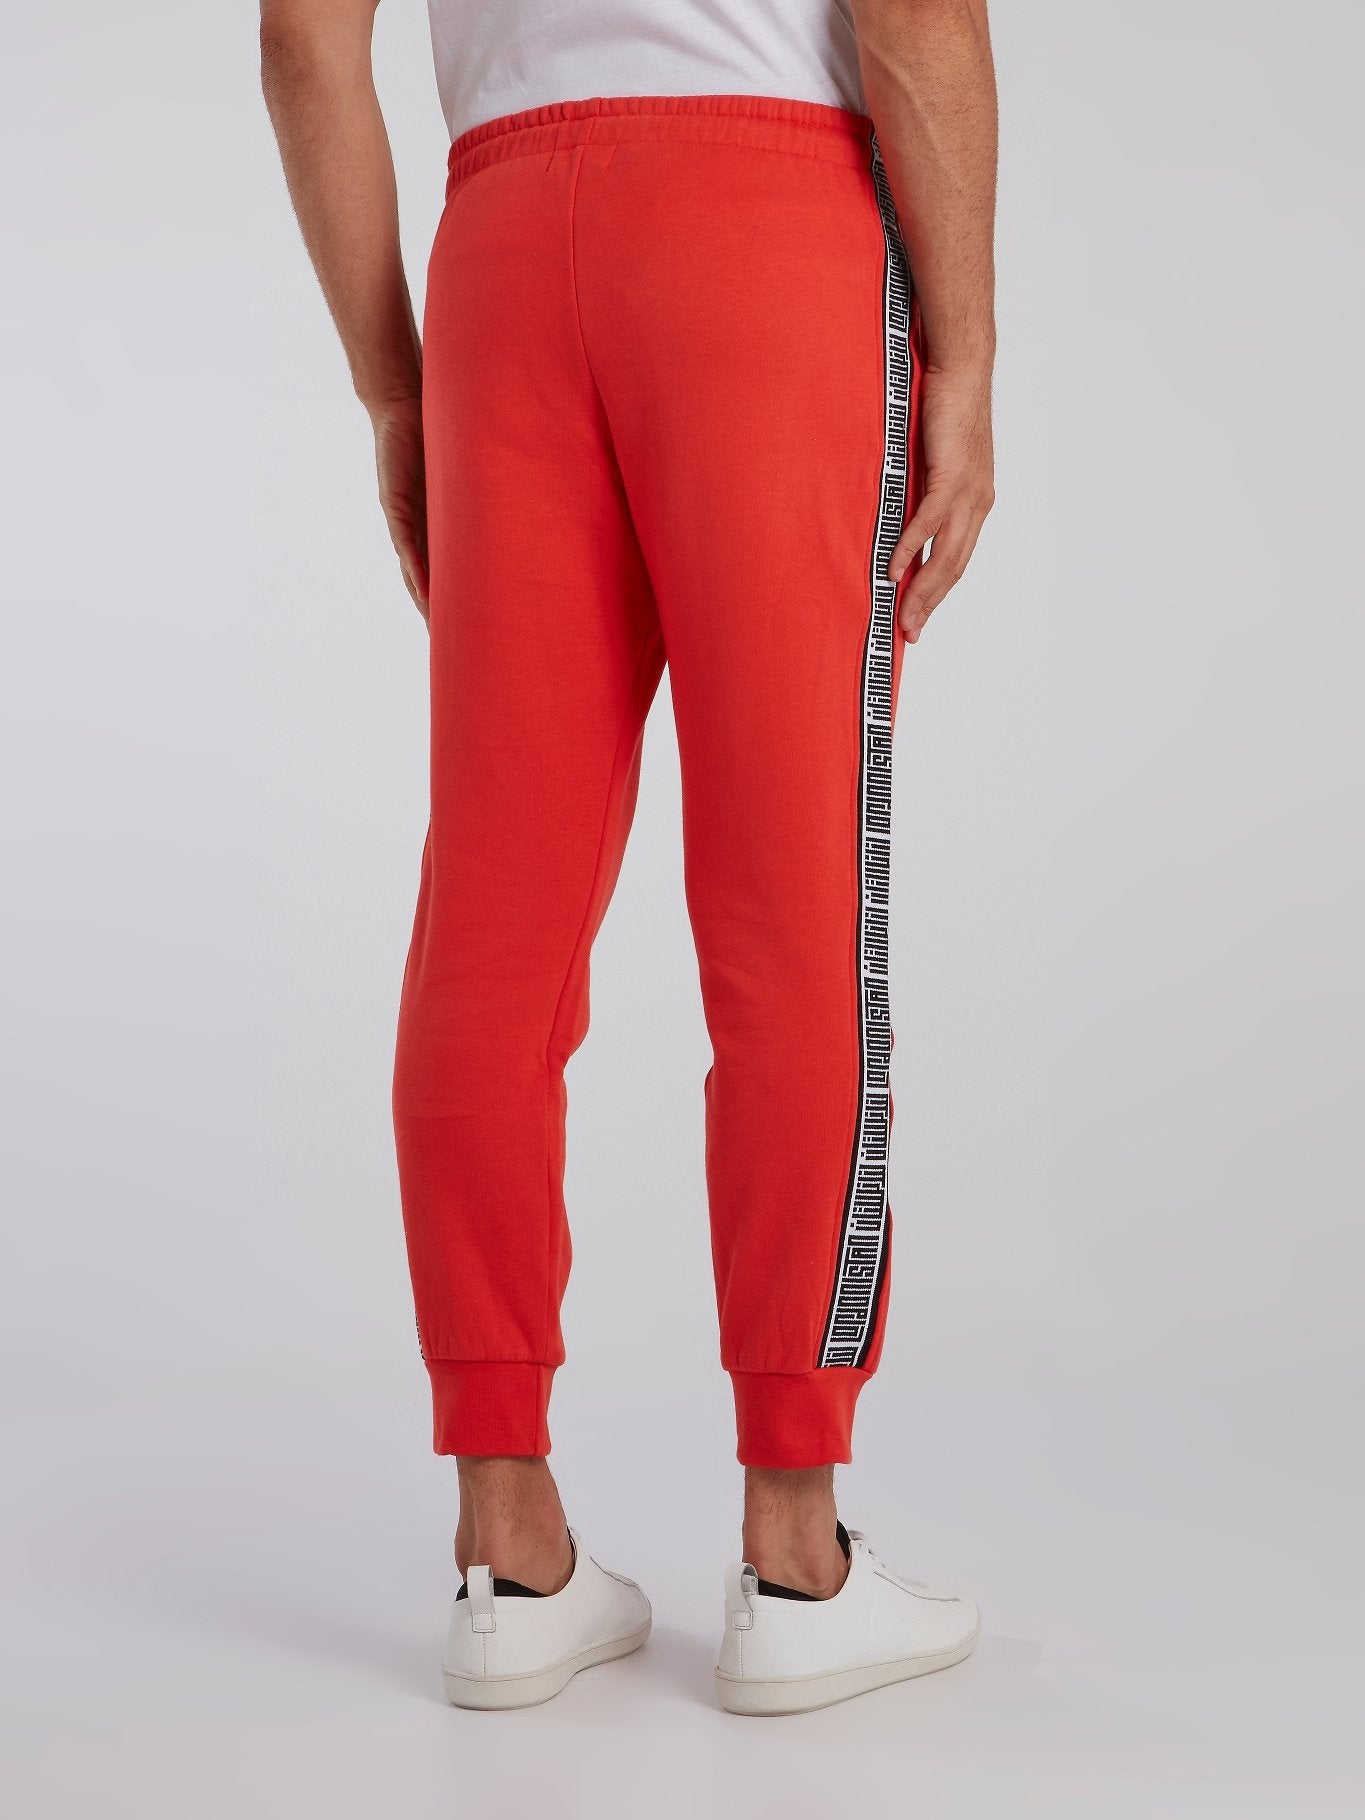 Buy Red Tape Men's Regular Pants (RJO0026_Olive_32) at Amazon.in